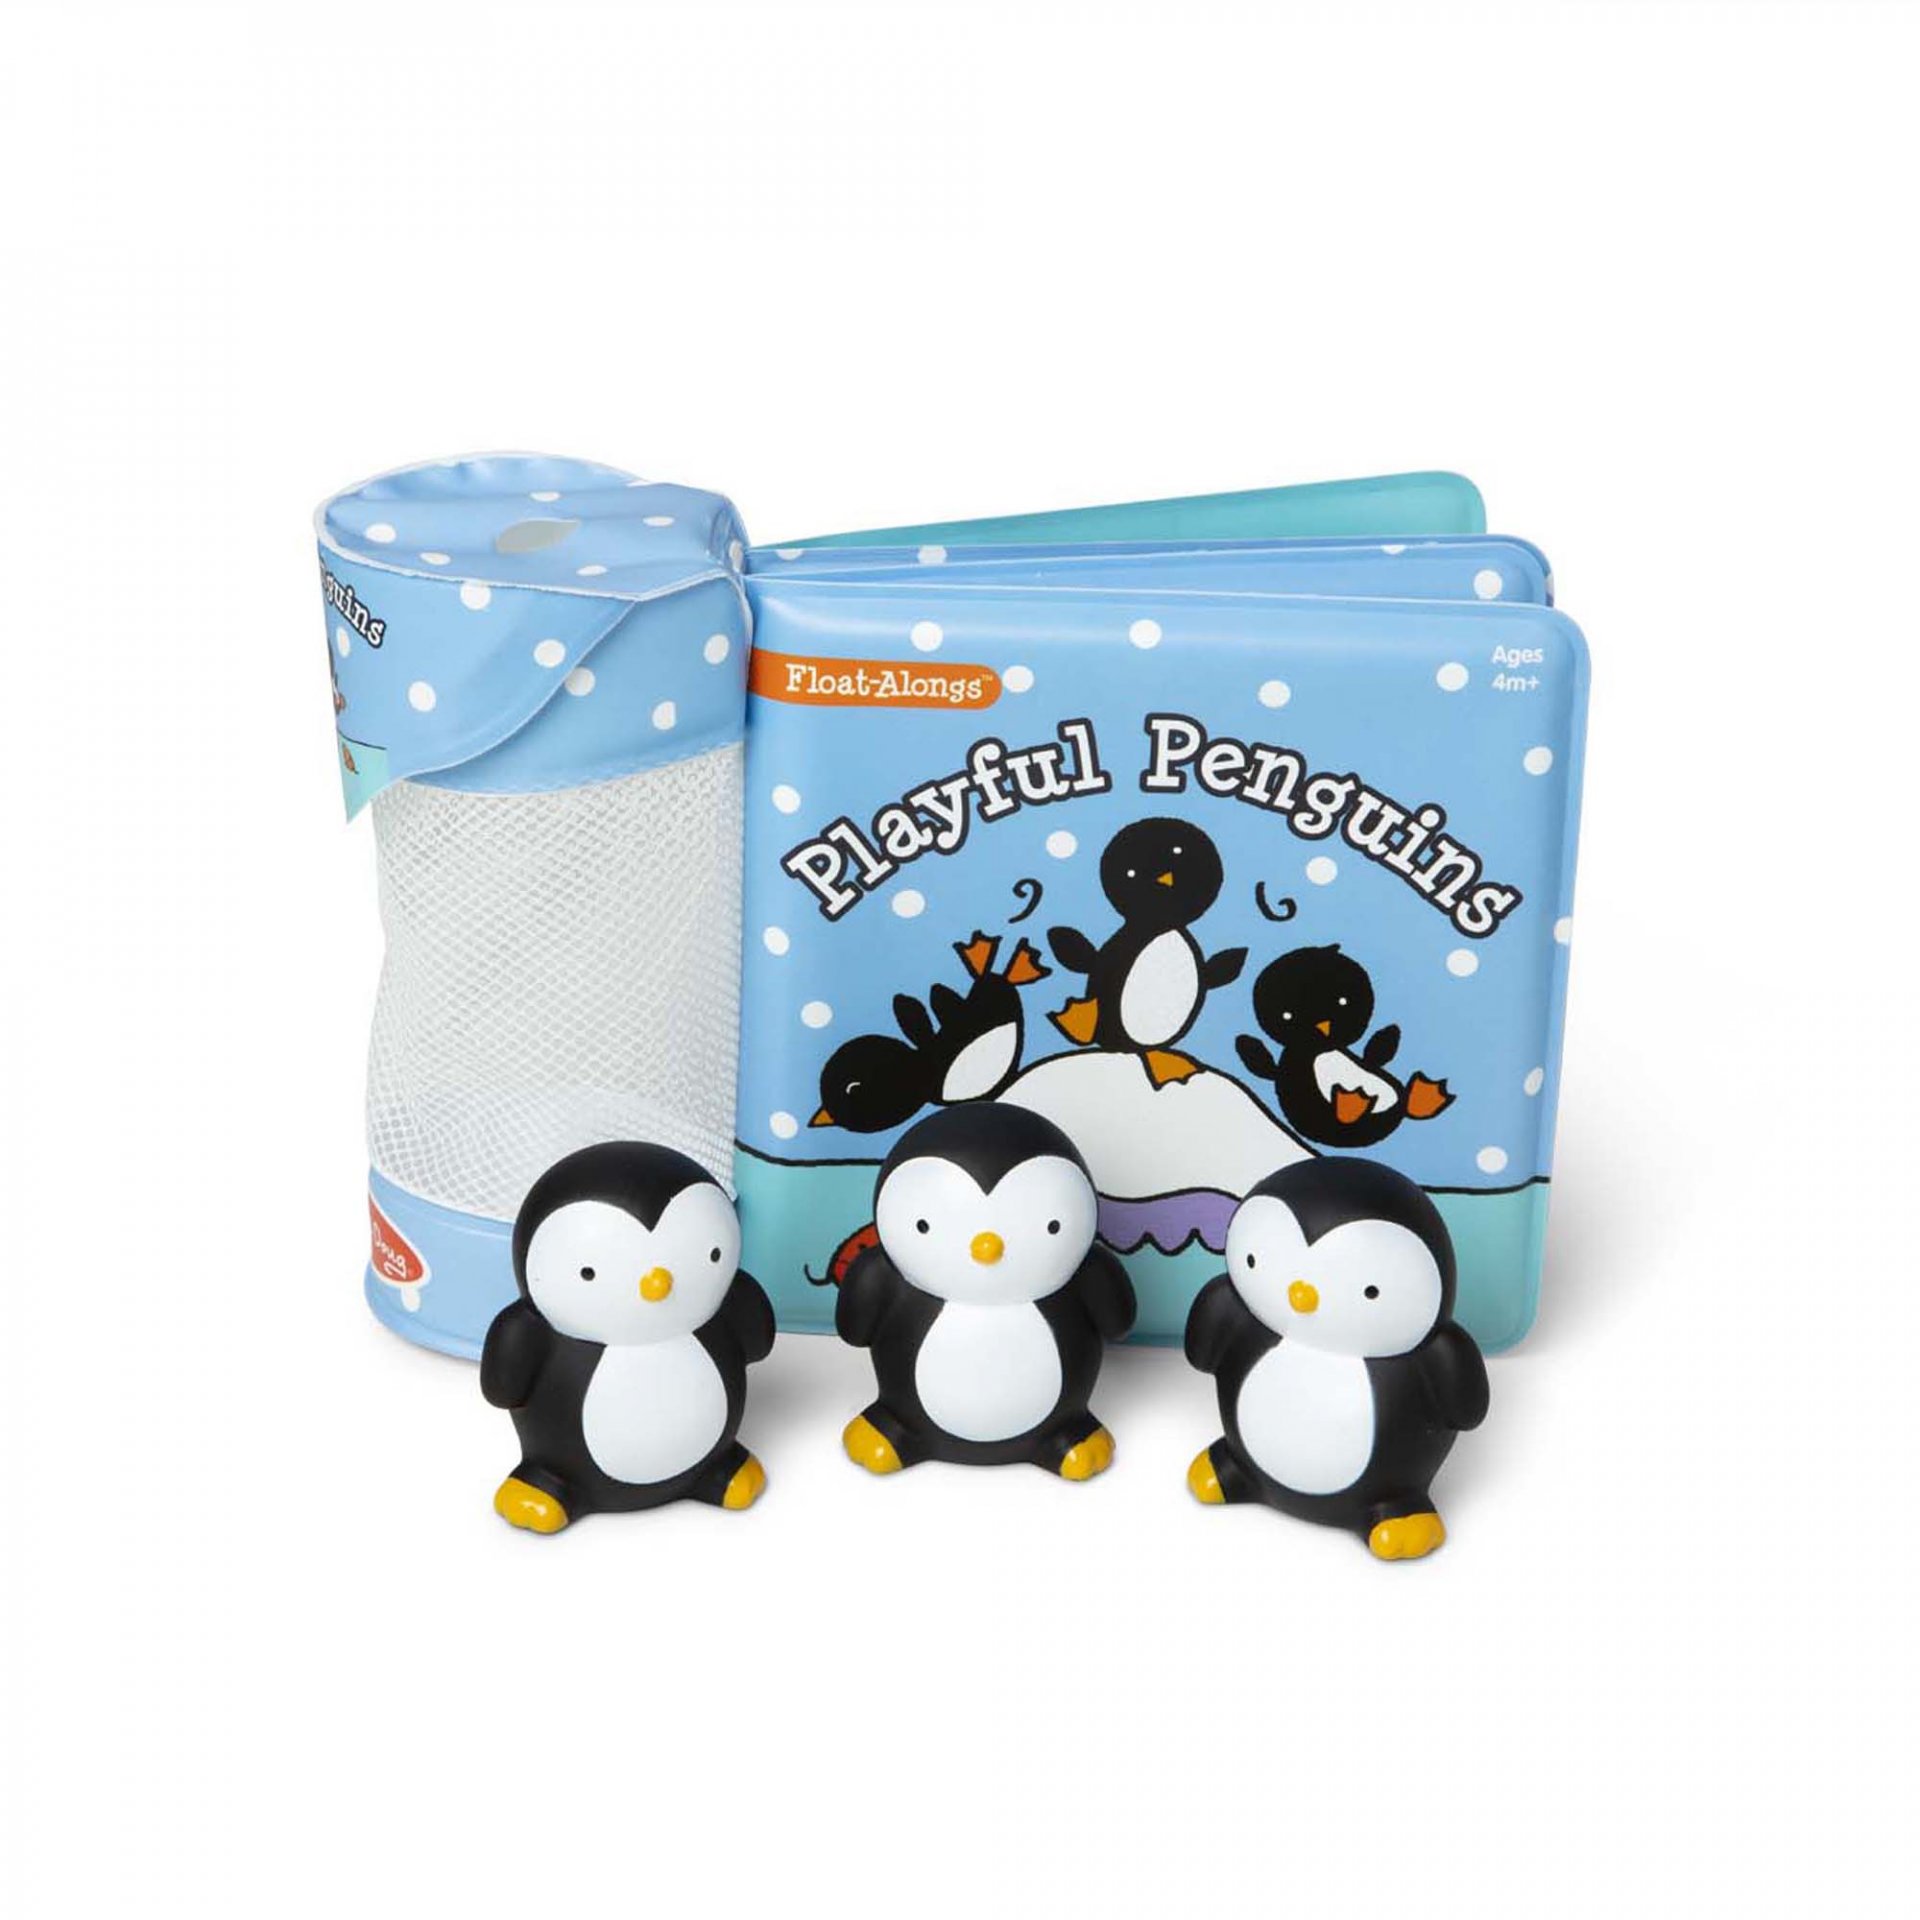 [หนังสือลอยน้ำ] รุ่น 31202 หนังสือลอยน้ำ เพนกวิน 3 ตัว  หนังสือ 4 หน้า Melissa & Doug Float-Alongs - Playful Penguins